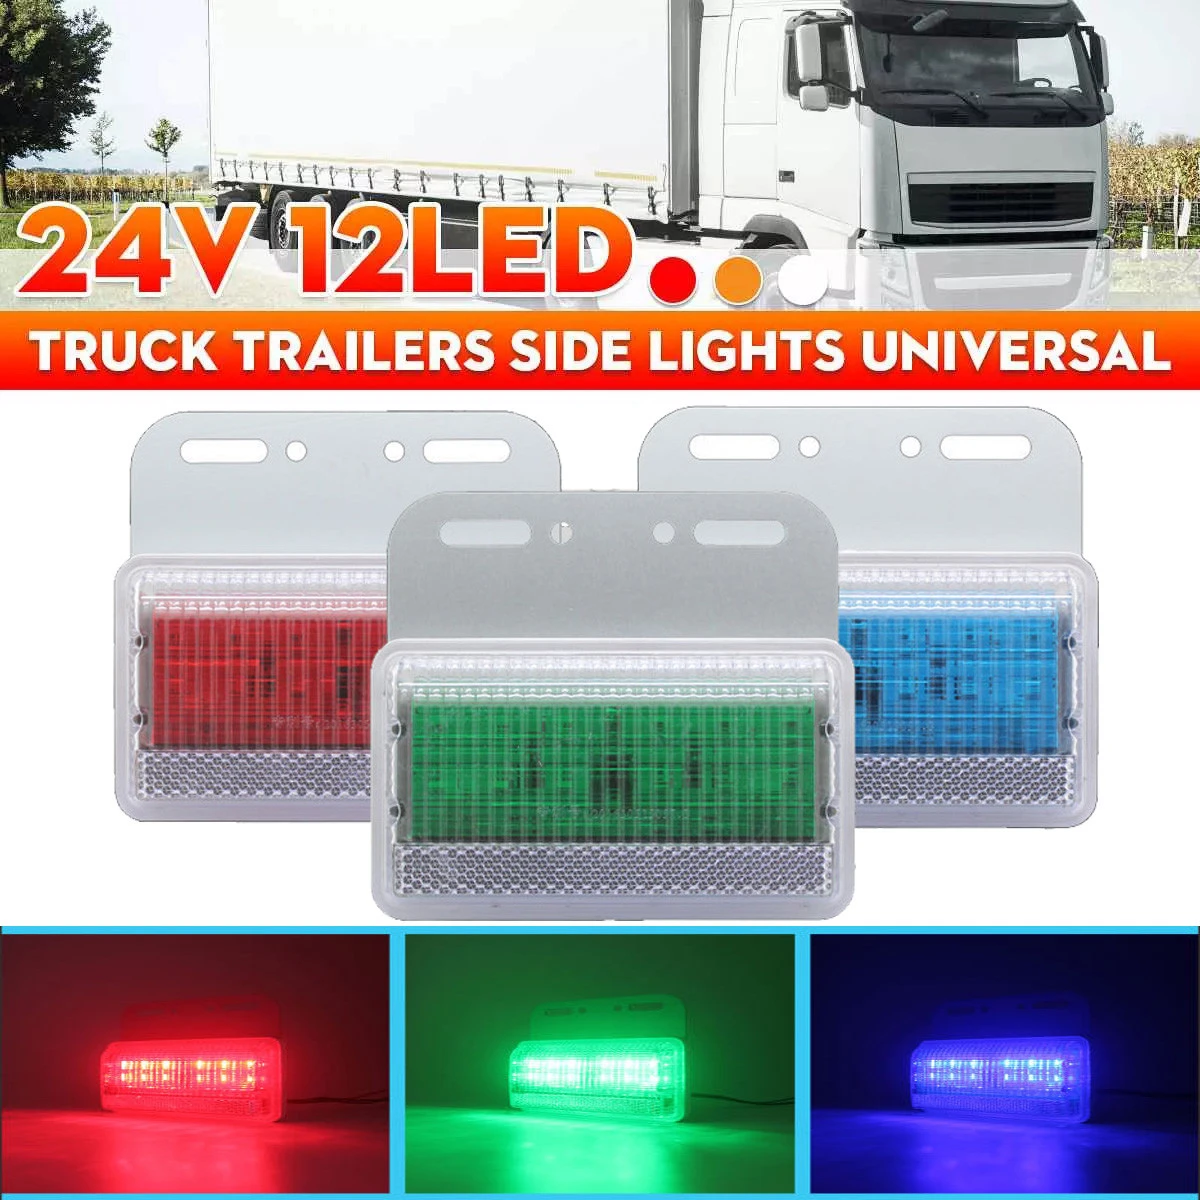 12V 24V Red White Amber LED semi truck lights trailer truck lighting systems waterproof and dustproof led side marker light